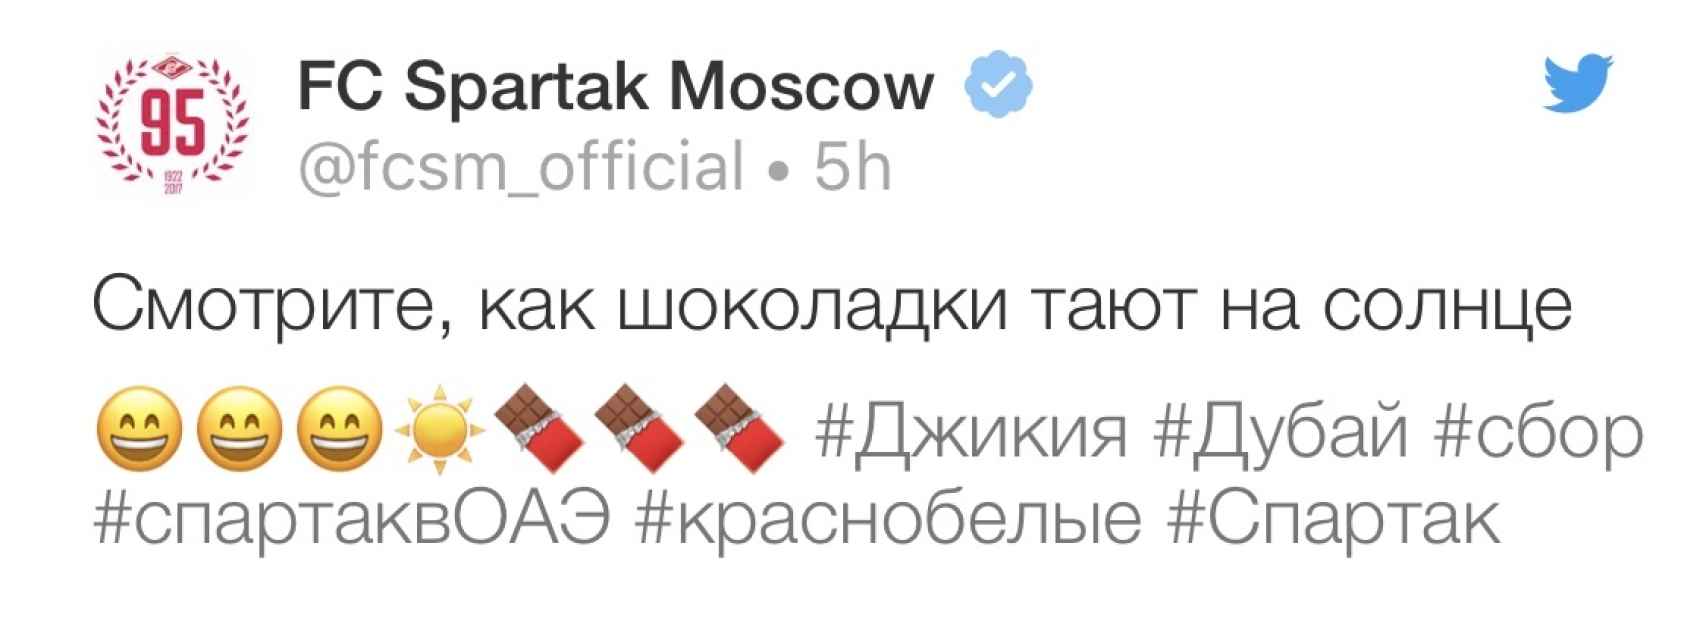 Tuit del Spartak de Moscú.